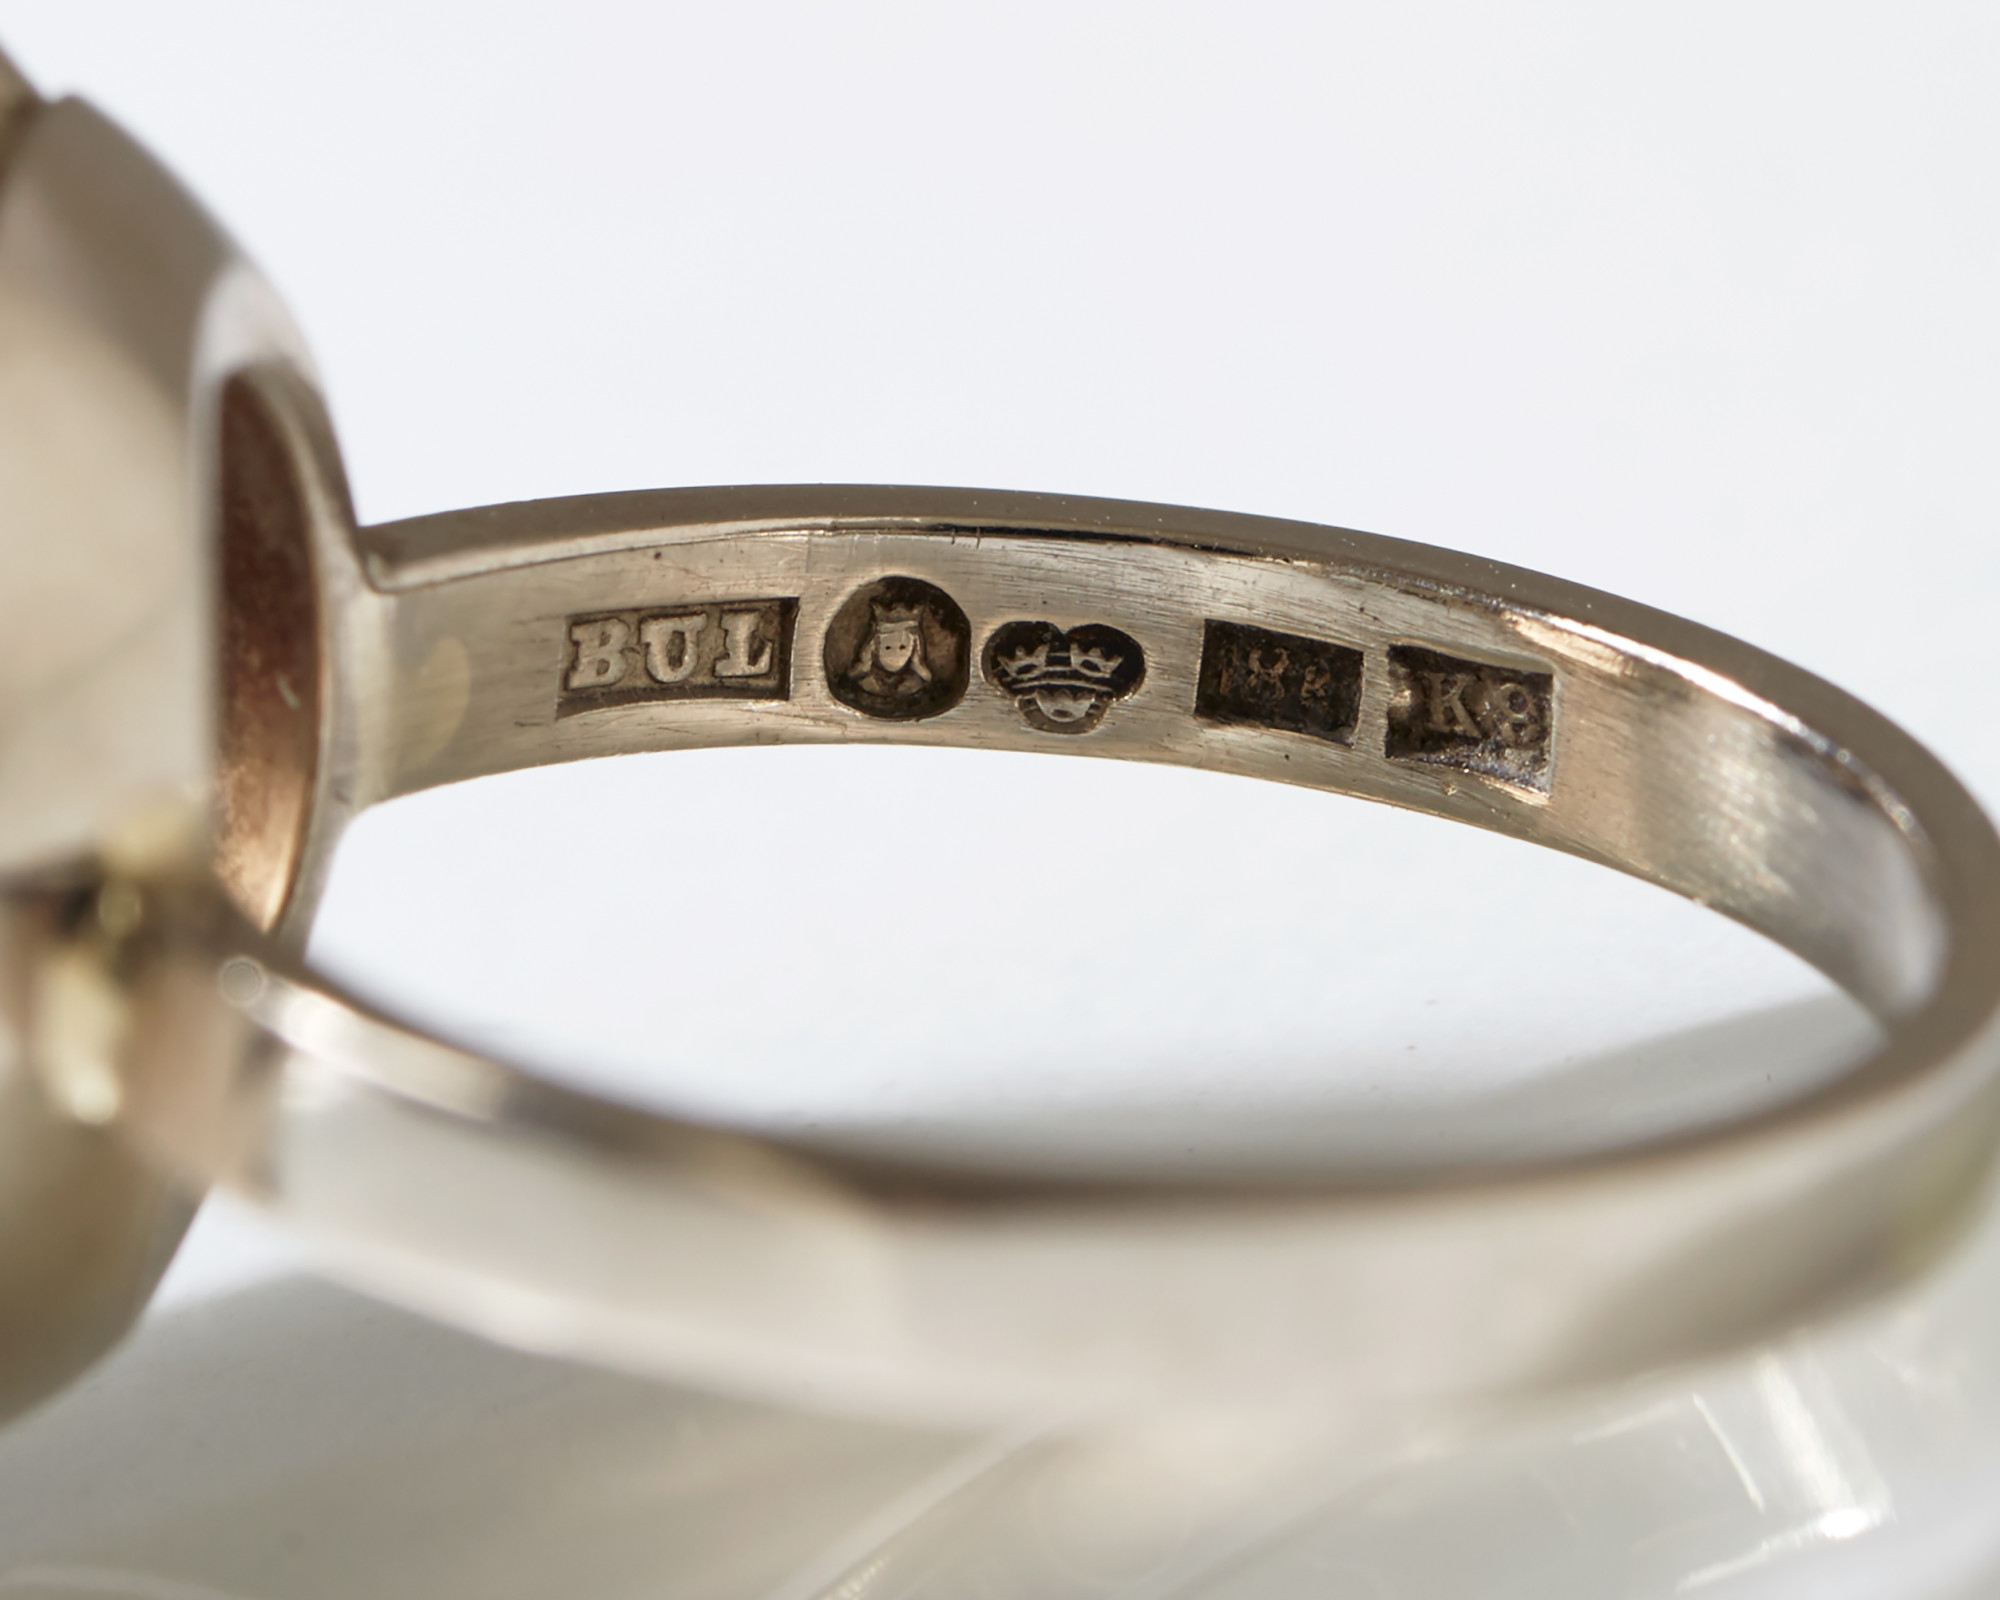 Ring designed by Bengt Liljedahl, — Modernity